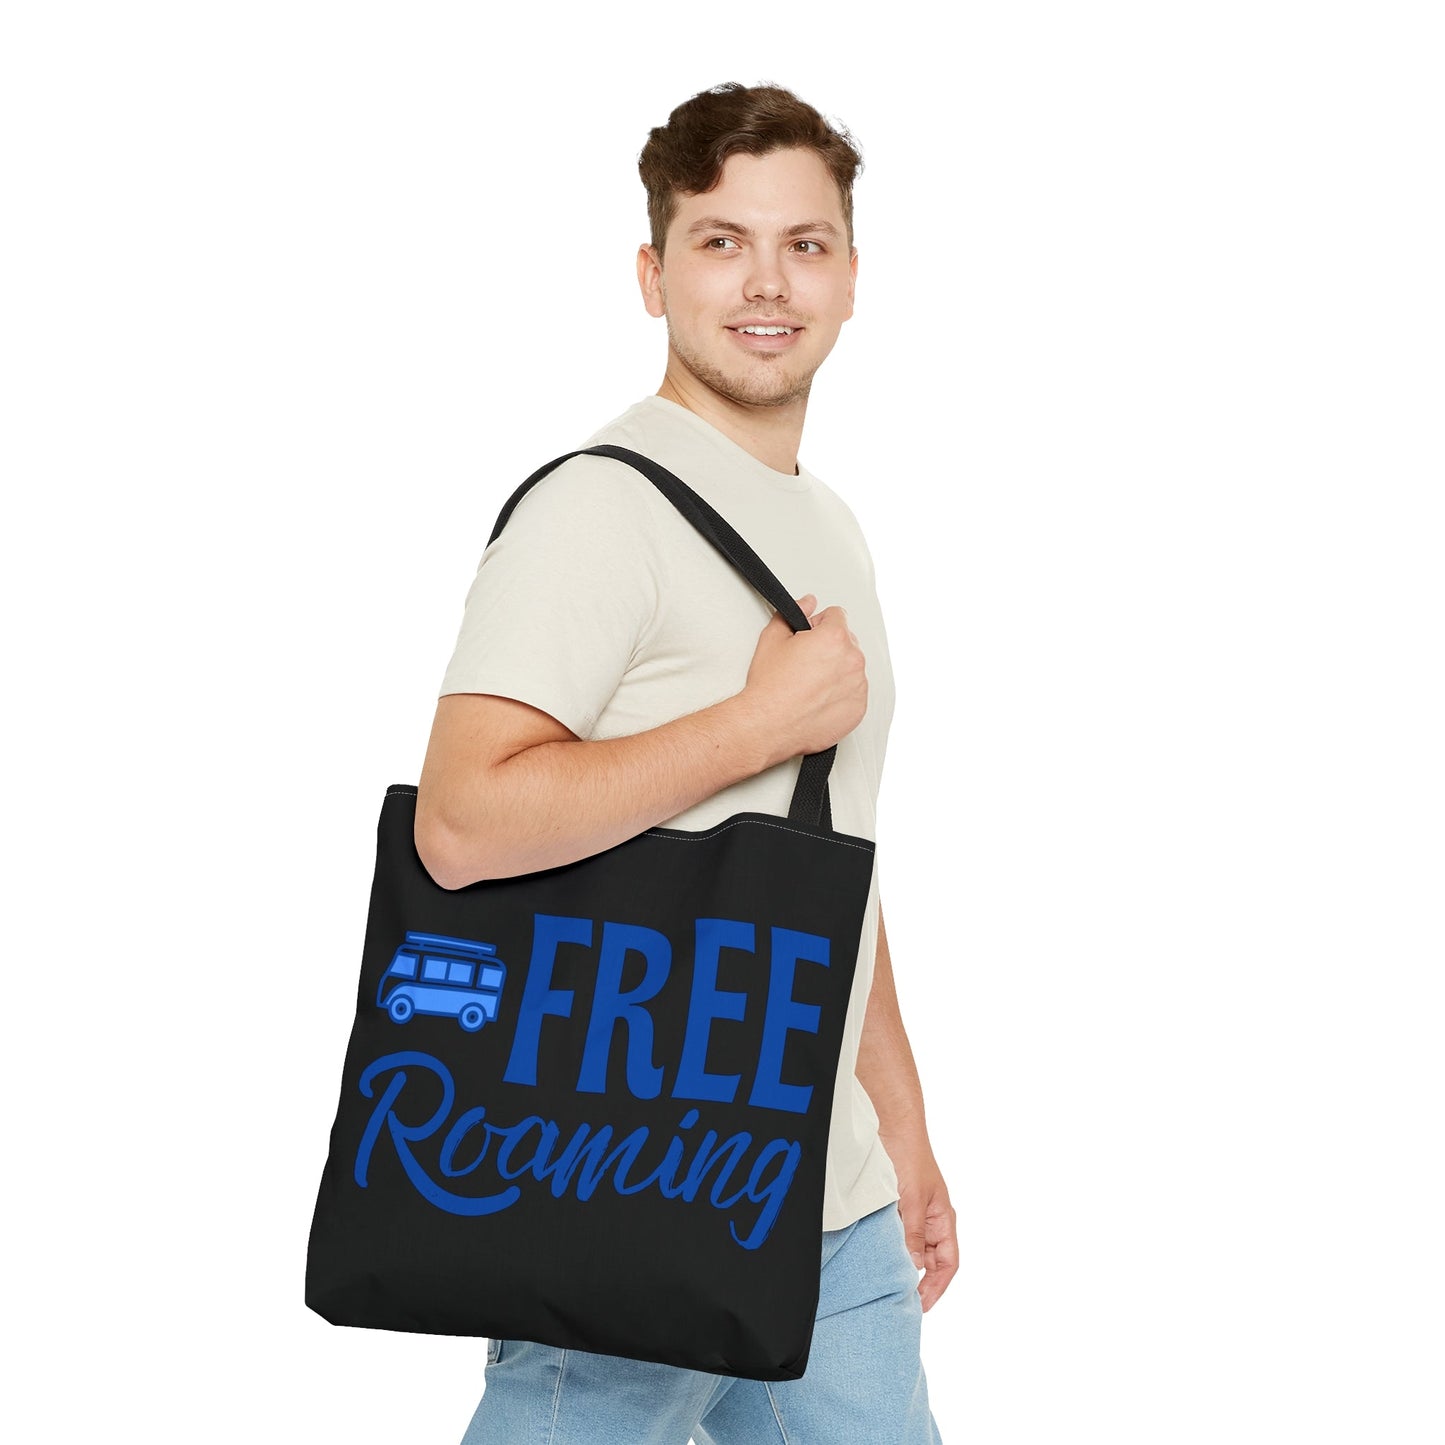 Free Roaming| Tote Bag